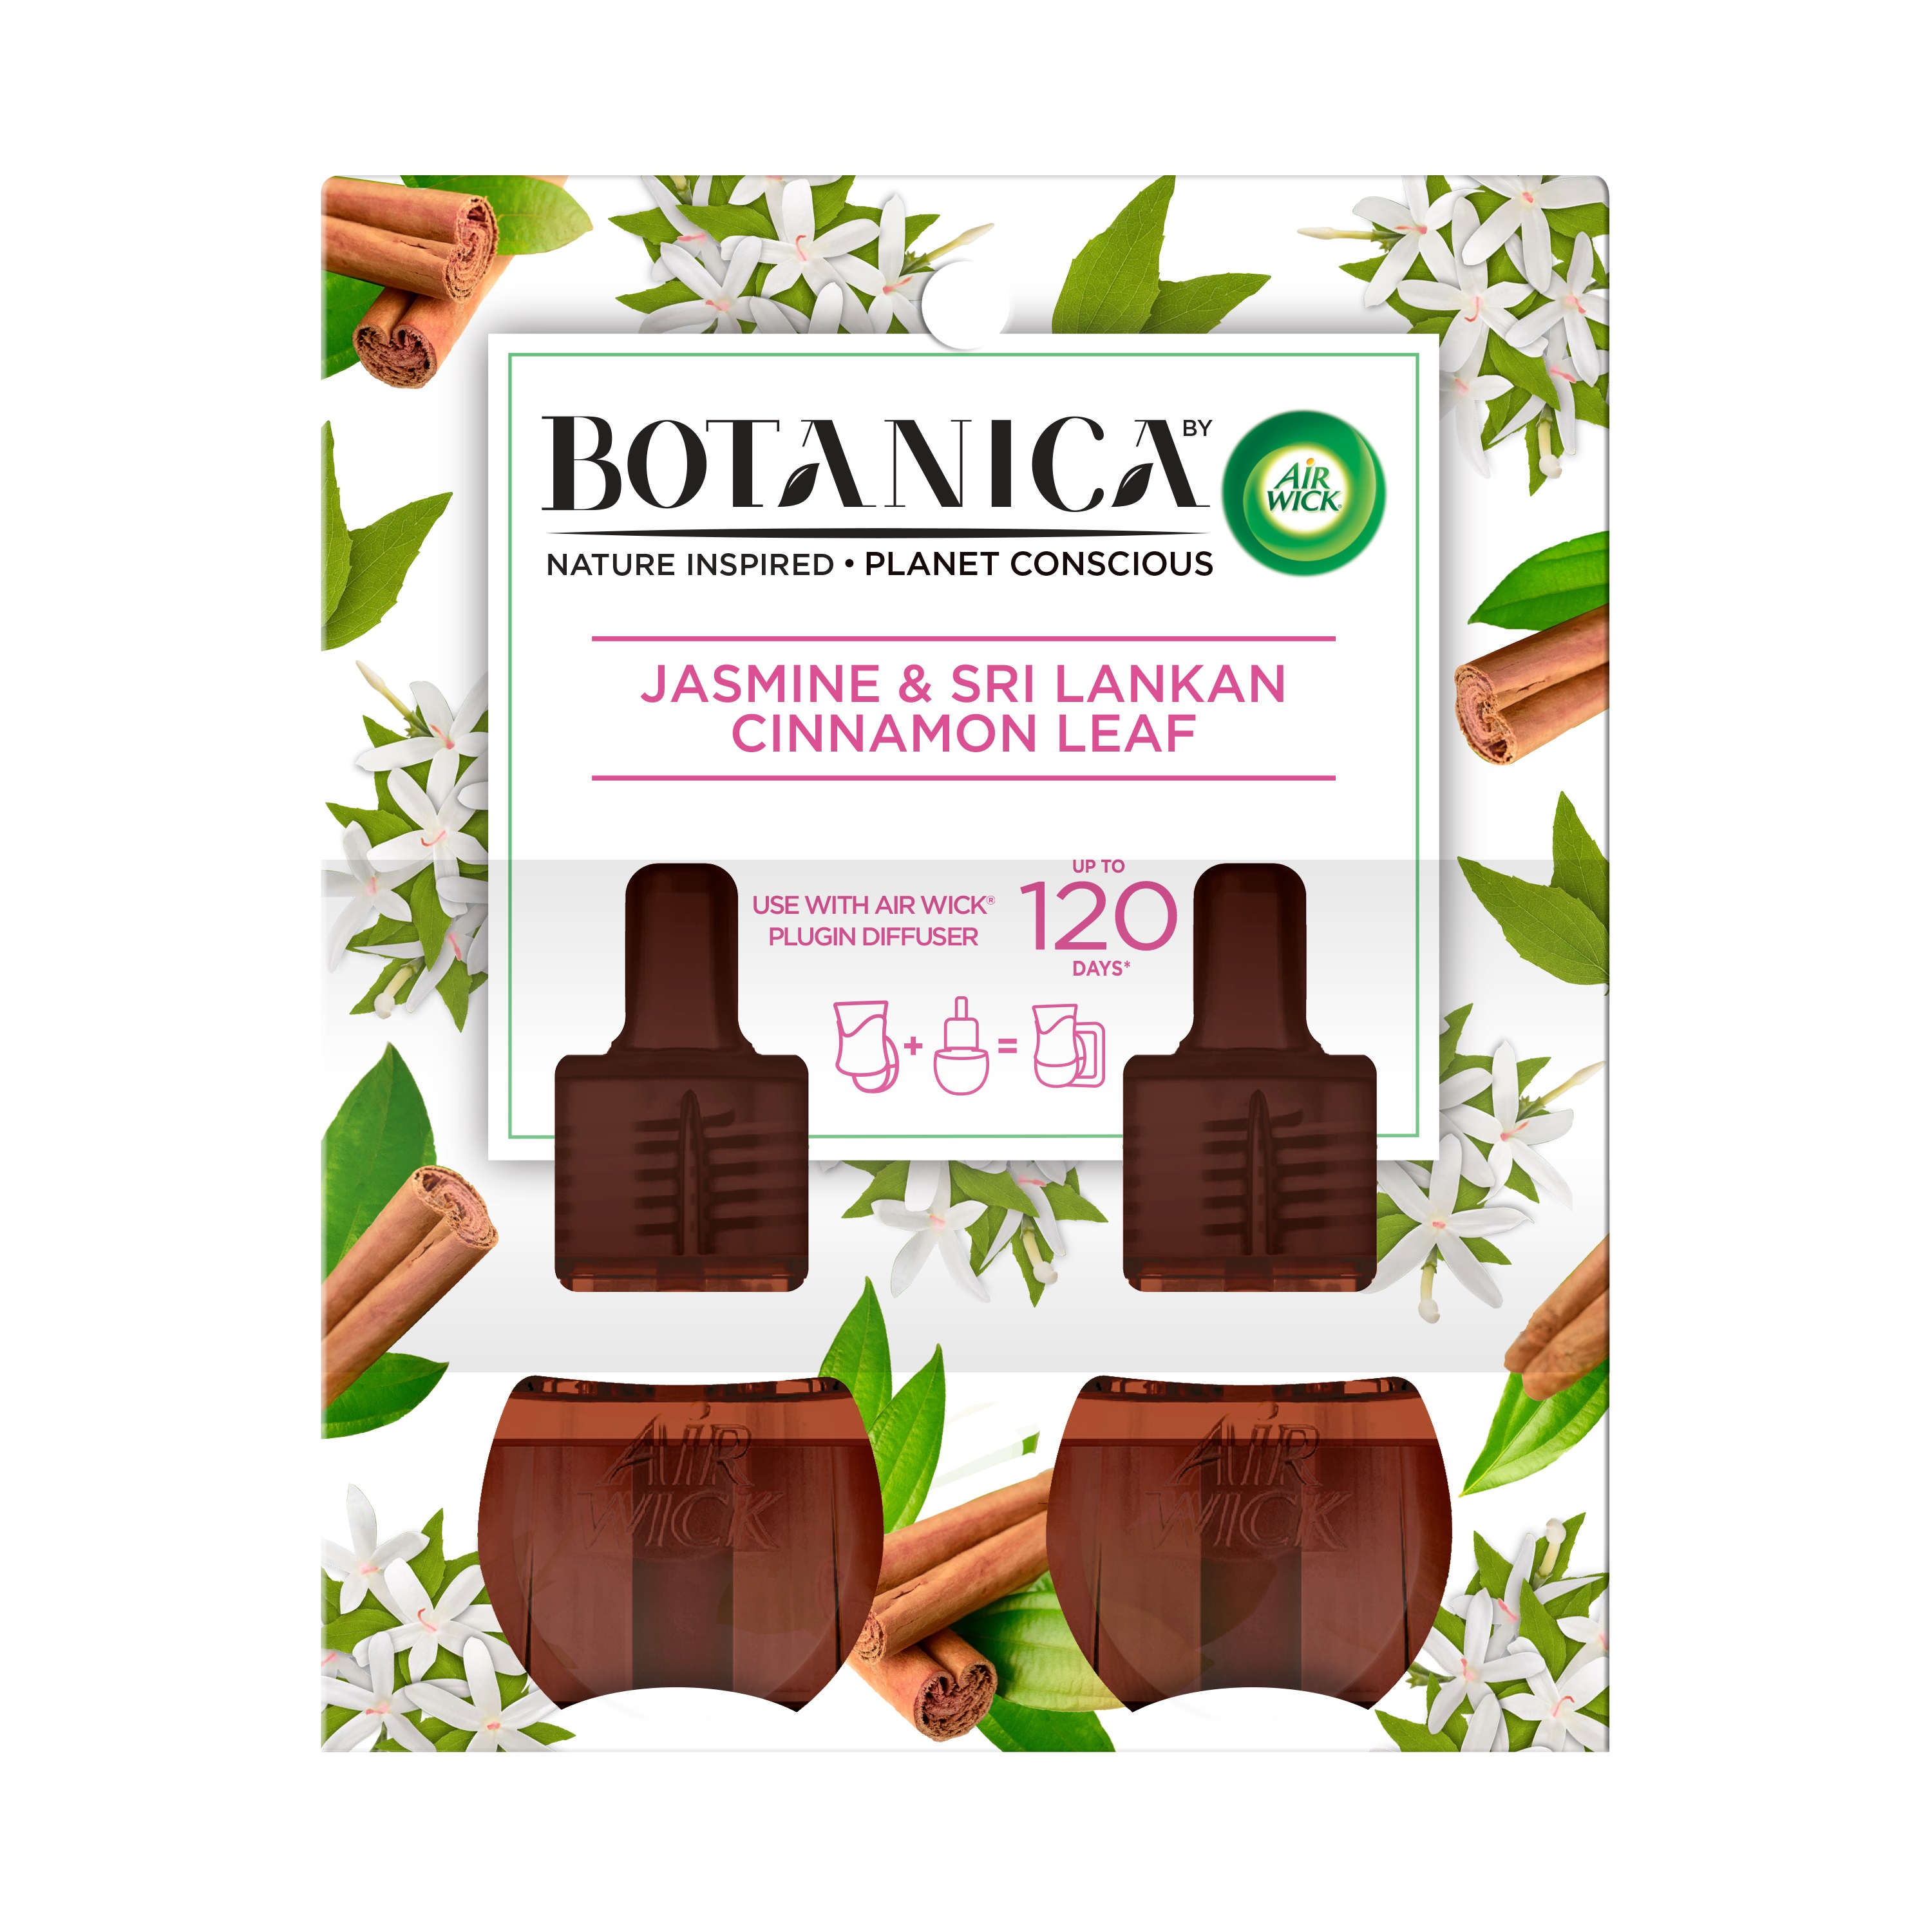 AIR WICK Botanica Scented Oil  Jasmine  Sri Lankan Cinnamon Leaf Discontinued